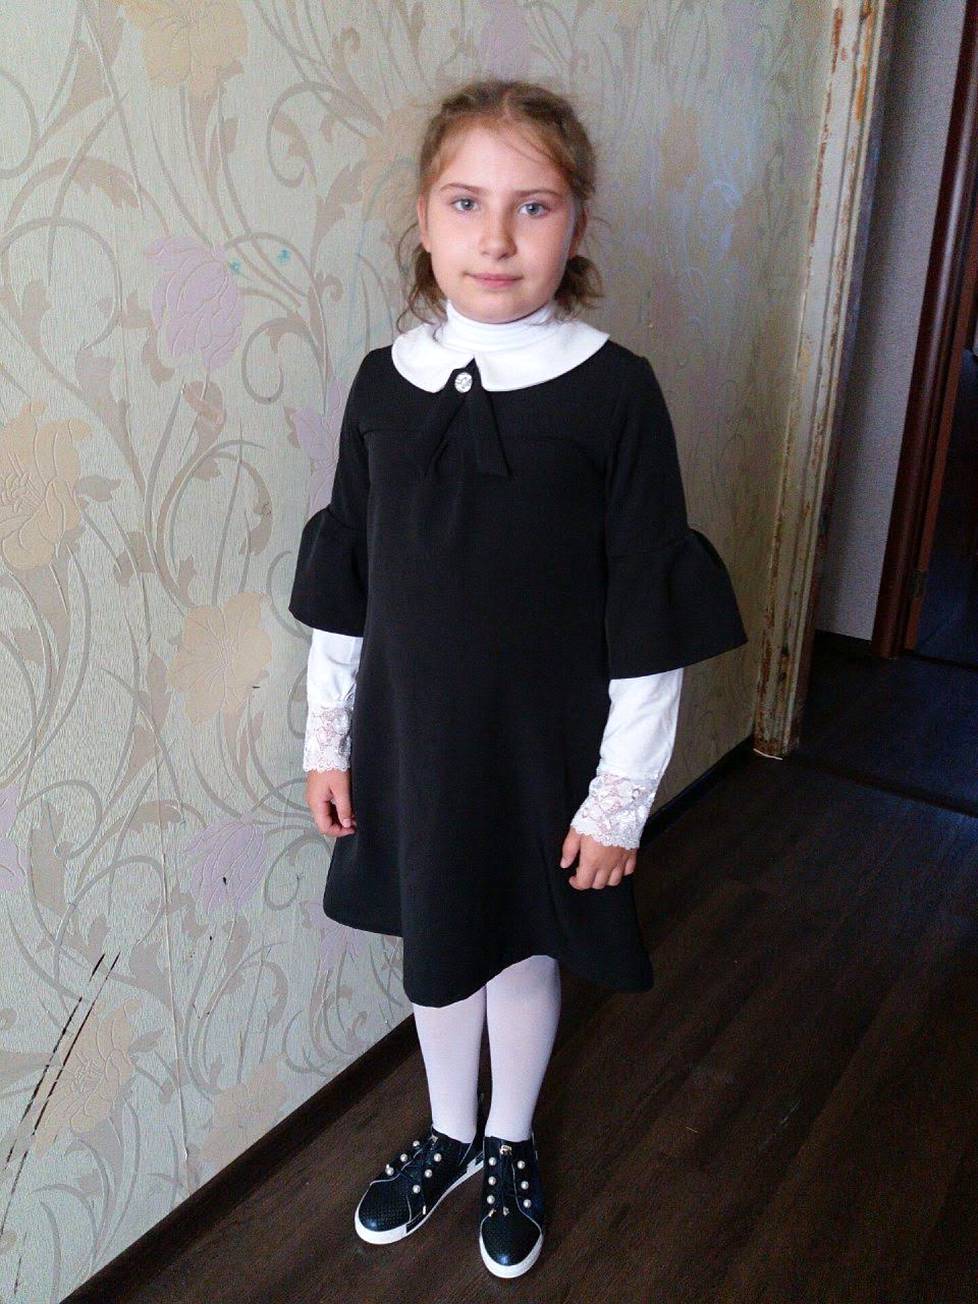 Anastasi Hrytsenko oli pidetty tyttö naapureiden keskuudessa.